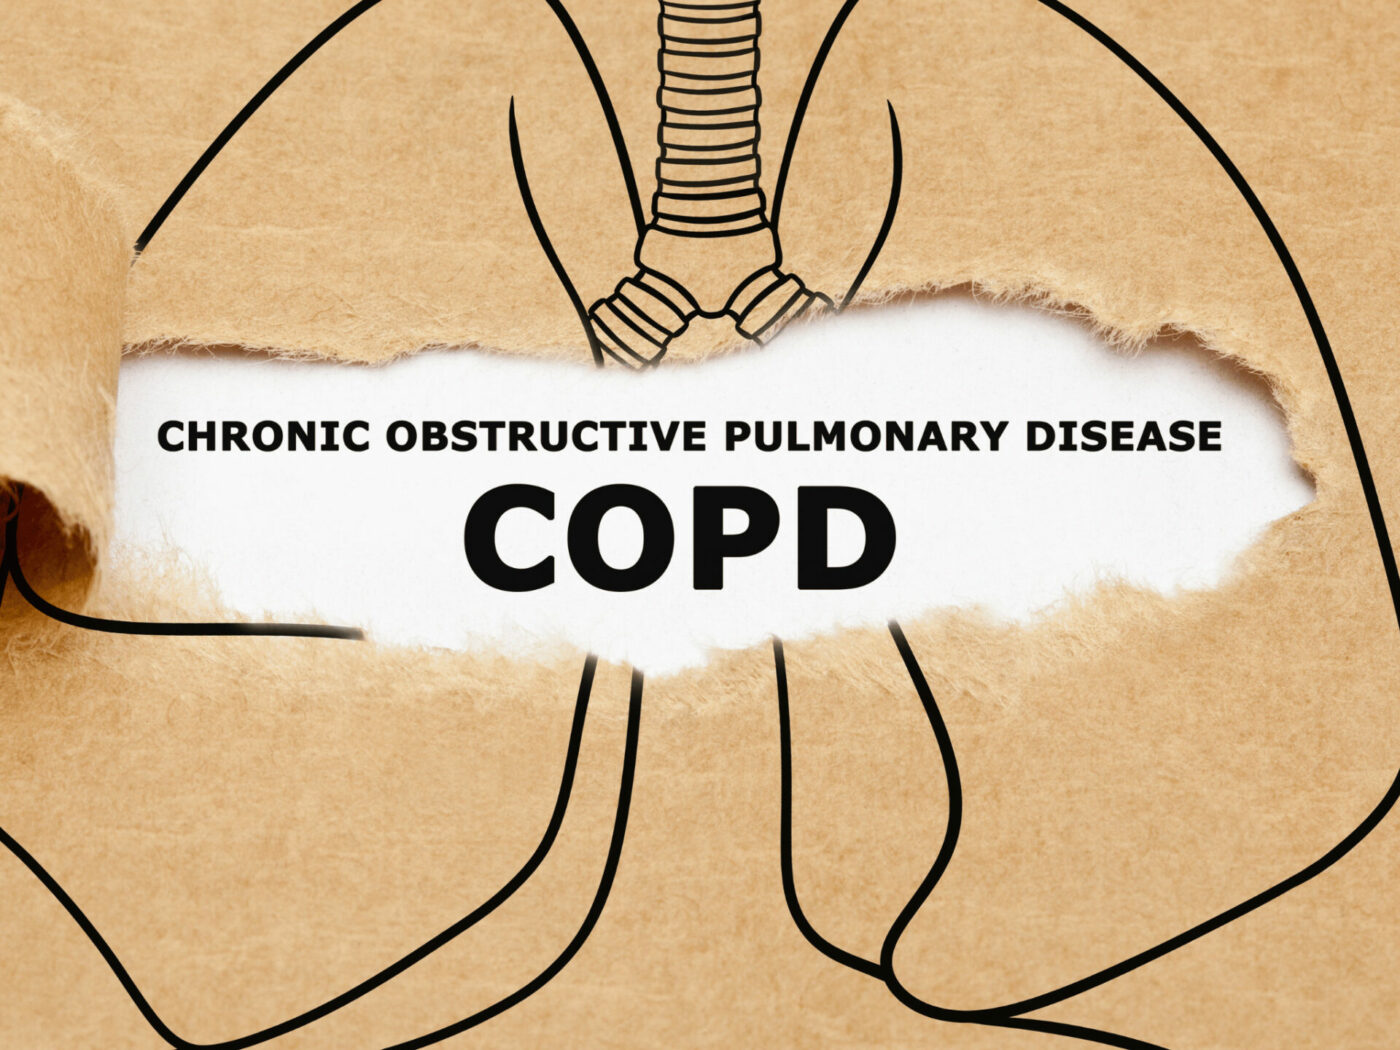 Aufgerissene Zeichnung auf Pappe von einer Lunge mit der Aufschrift Chronic obstructive pulmonary disease COPD